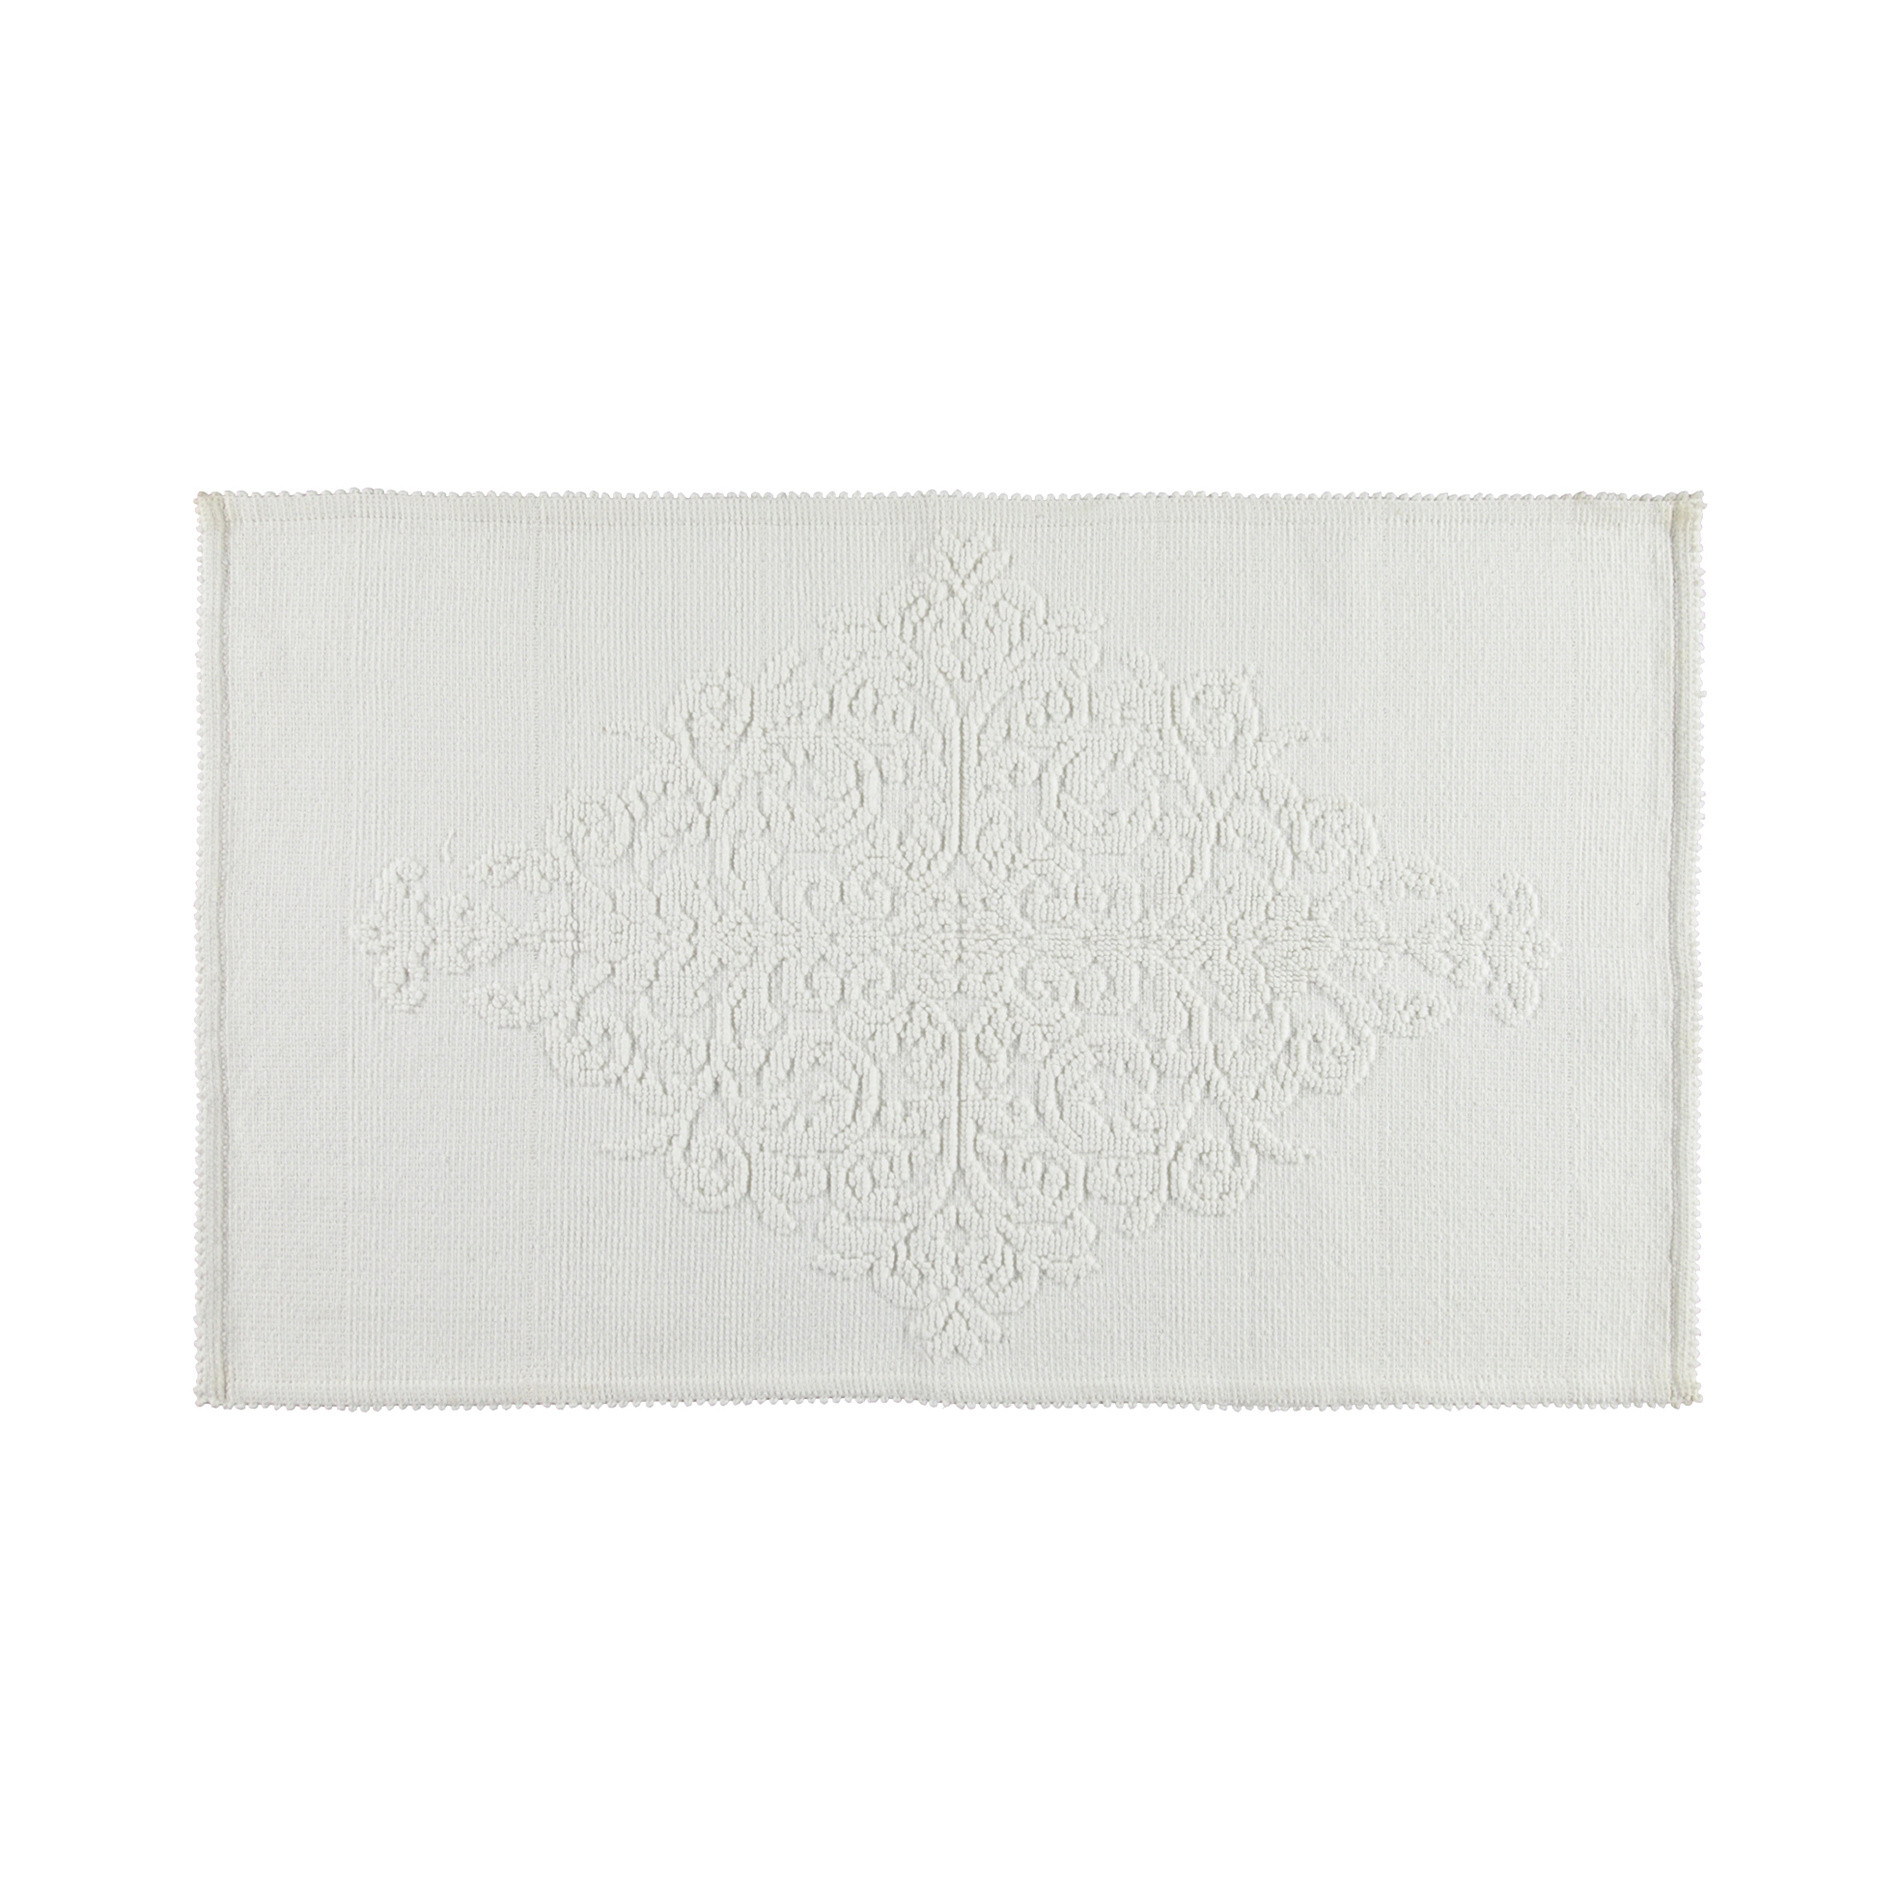 Tappeto bagno con decorazione a rilievo, Bianco, large image number 0